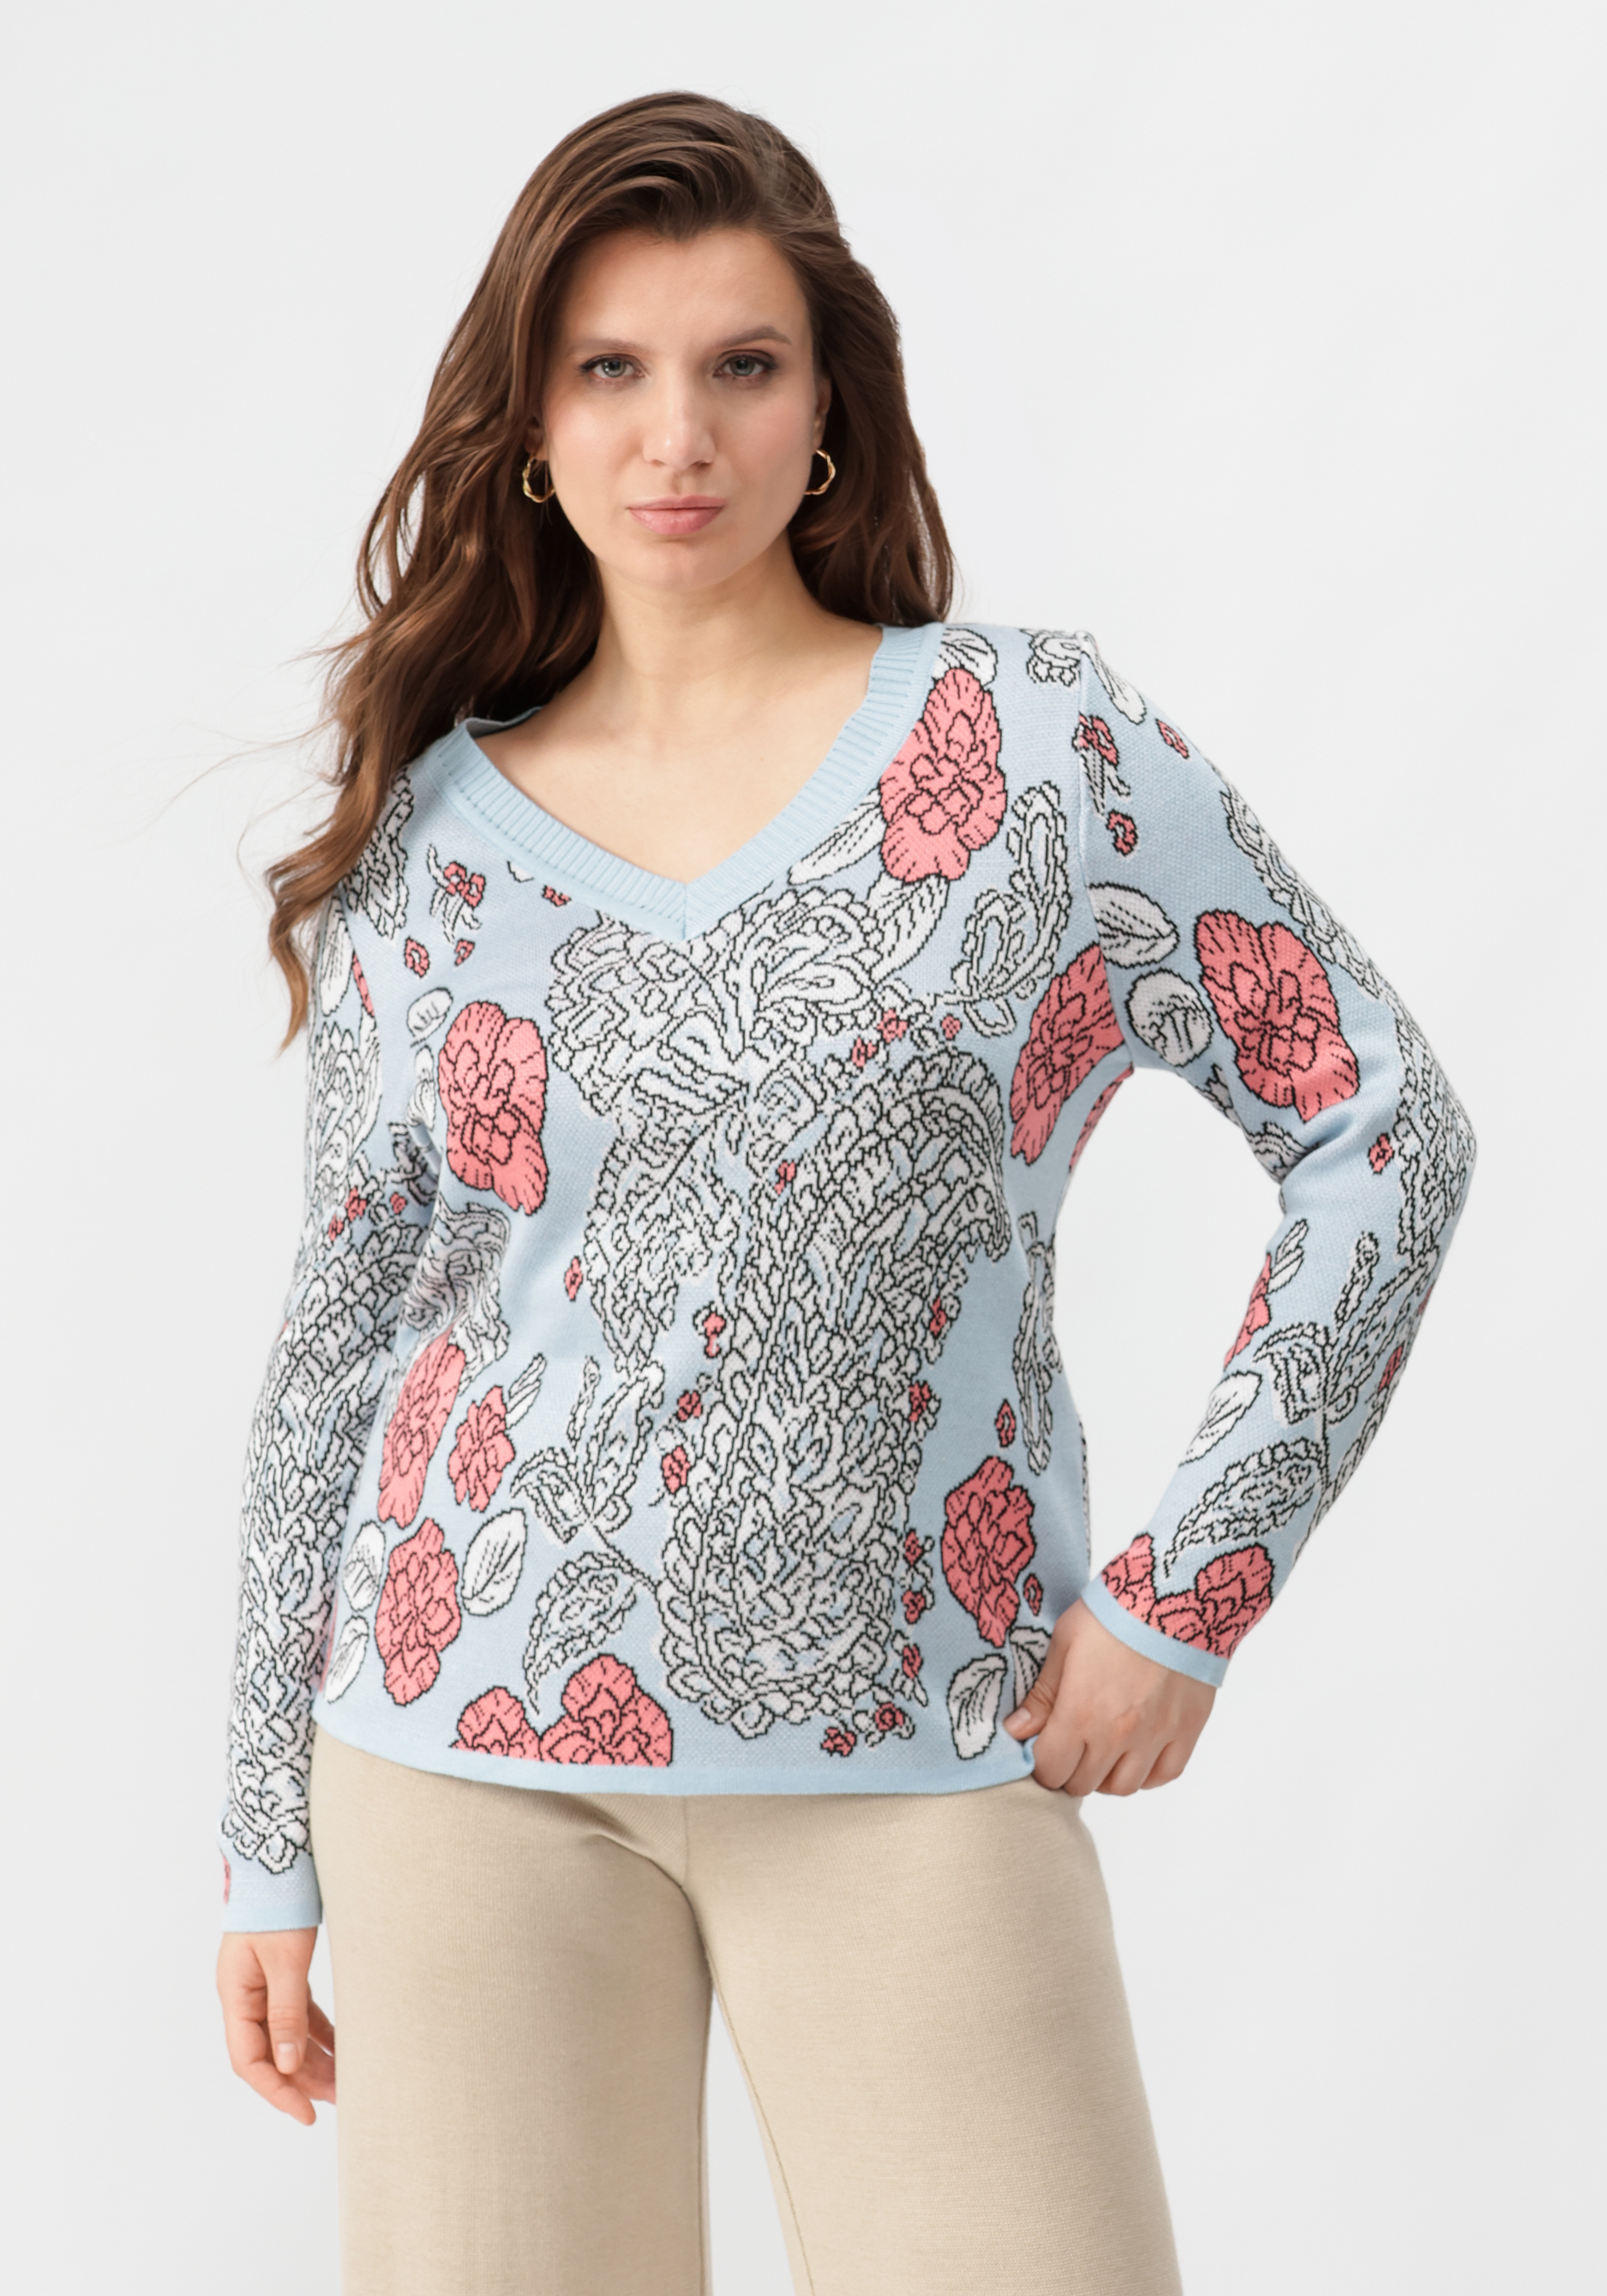 Пуловер с V-образным вырезом, цветным принтом рабочий свитшот пуловер nitras